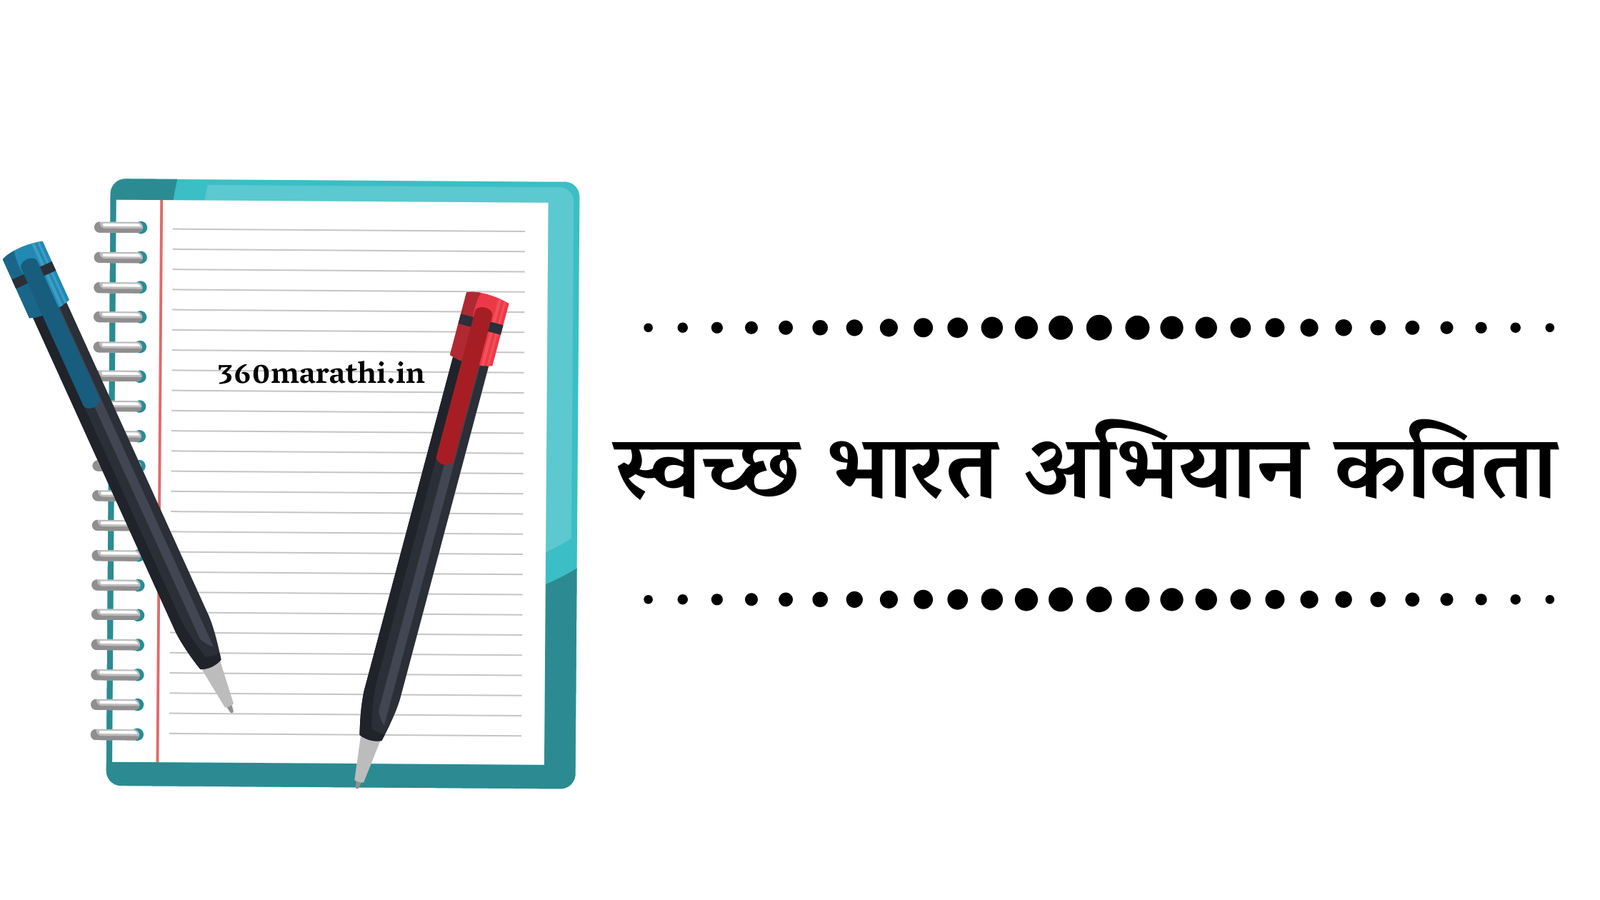 स्वच्छ भारत | स्वच्छ भारत अभियानावर कविता | Poems on Swachh Bharat and Swachh Bharat Abhiyan In Hindi)